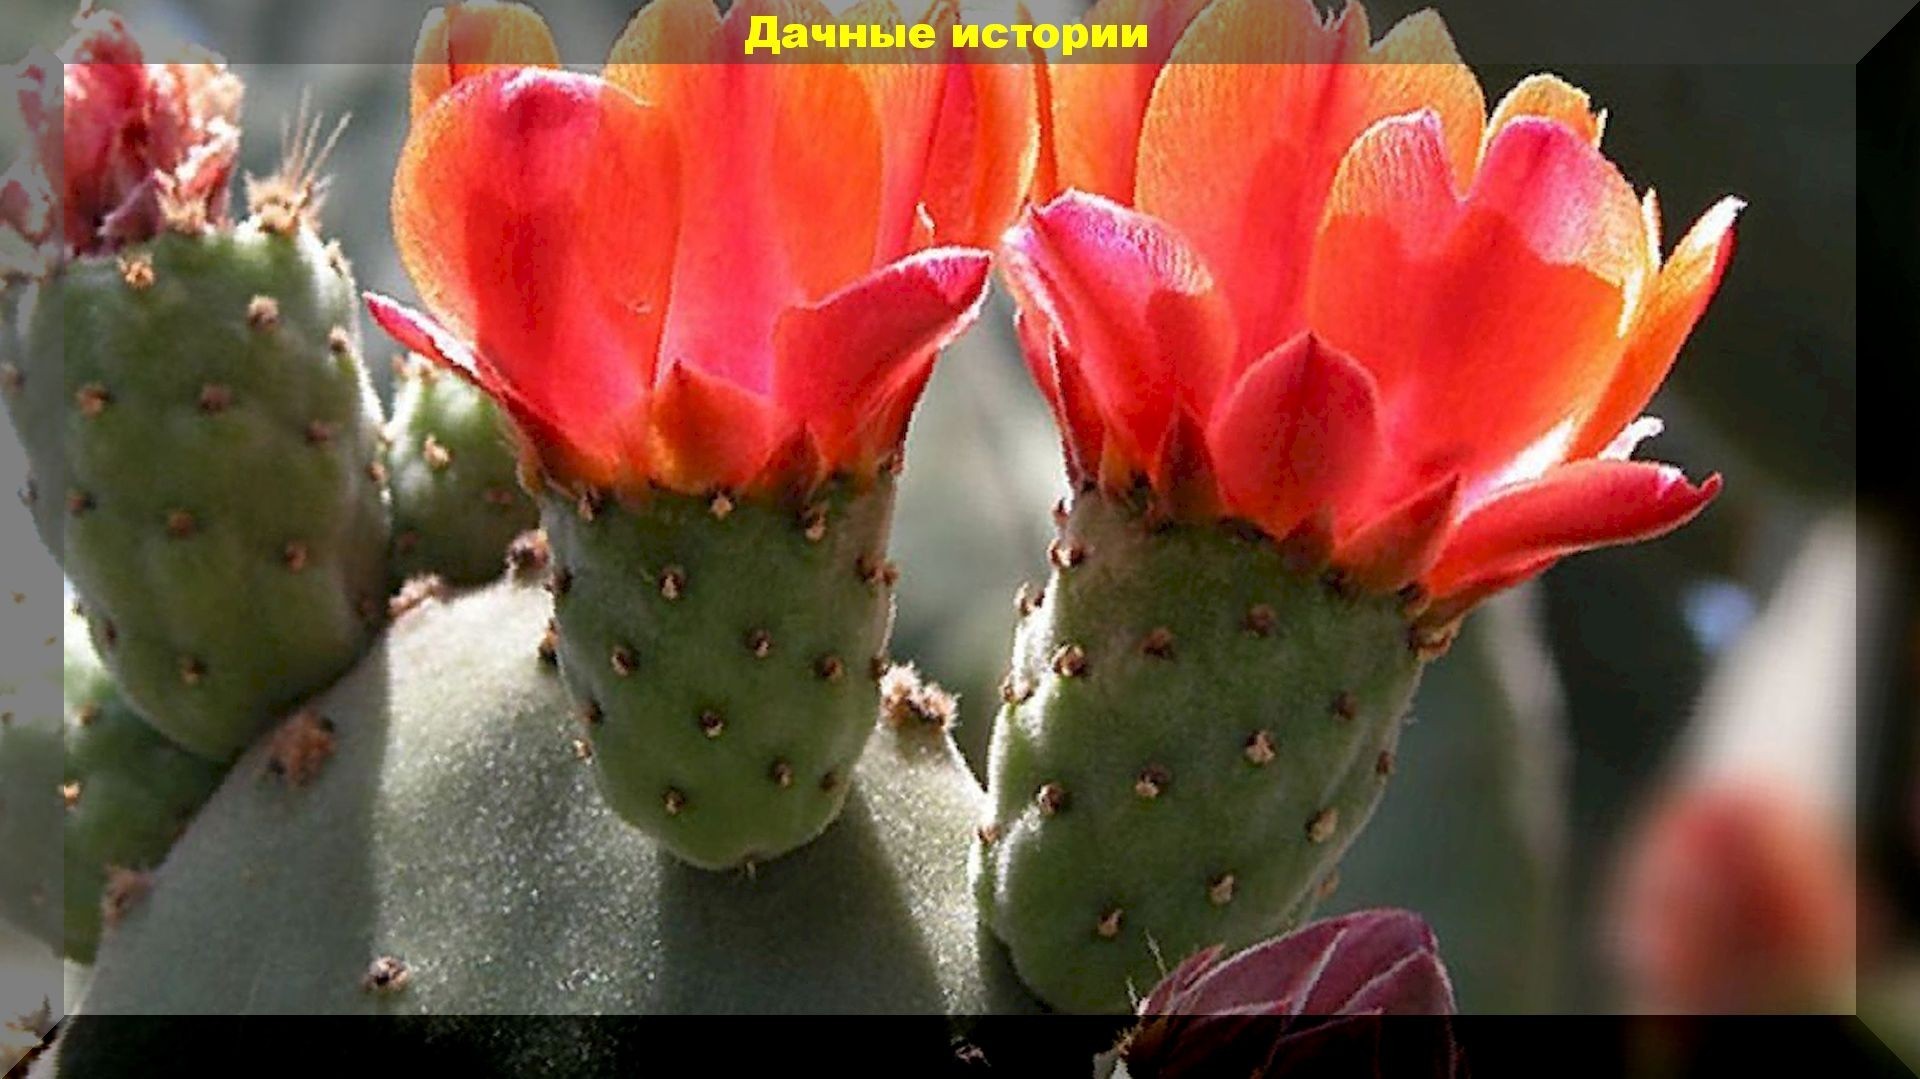 Кактус "Опунция", который может расти в средней полосе России, в открытом грунте